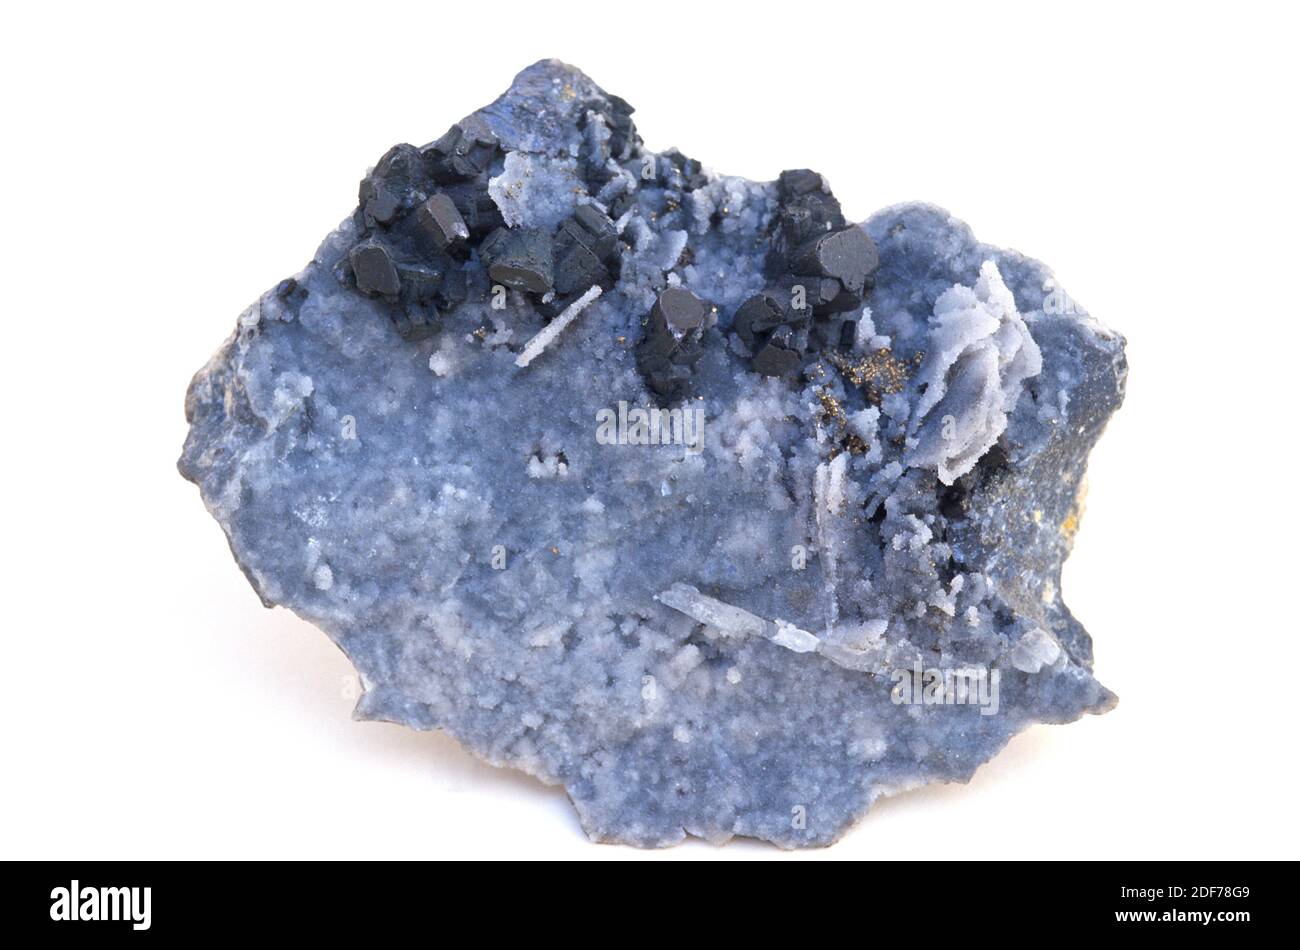 La enargita (cristales oscuros) es un mineral de cobre-arsénico sulfosáltico. Muestra cristalizada rodeada de baríta. Foto de stock